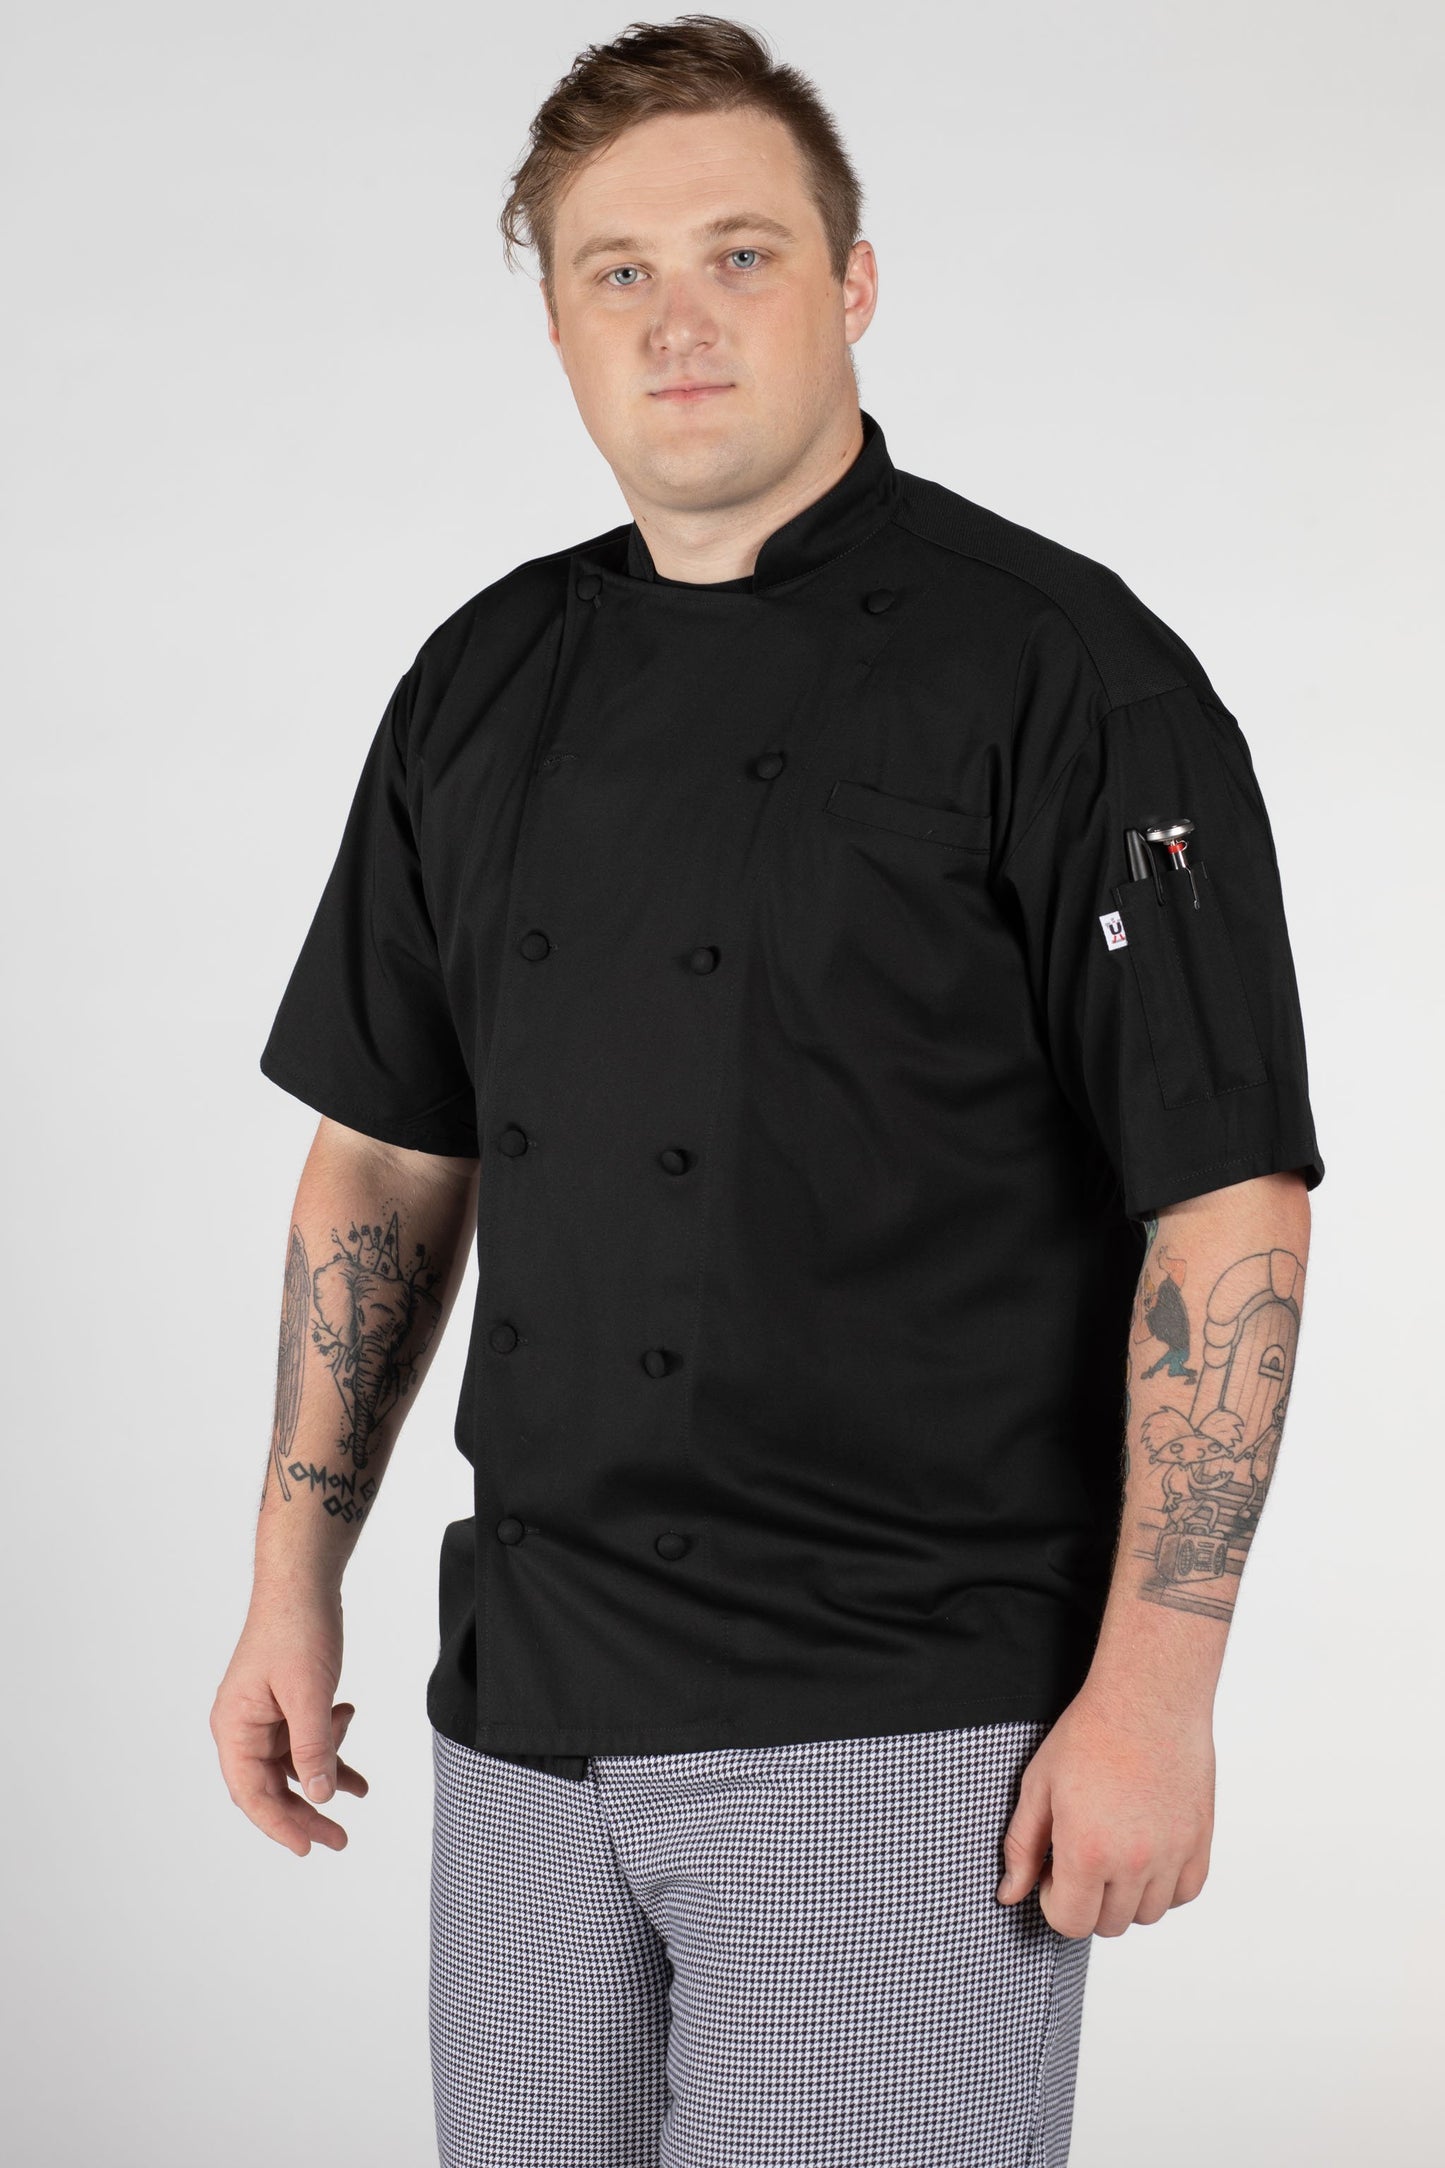 Aruba Pro Vent Chef Coat #0480